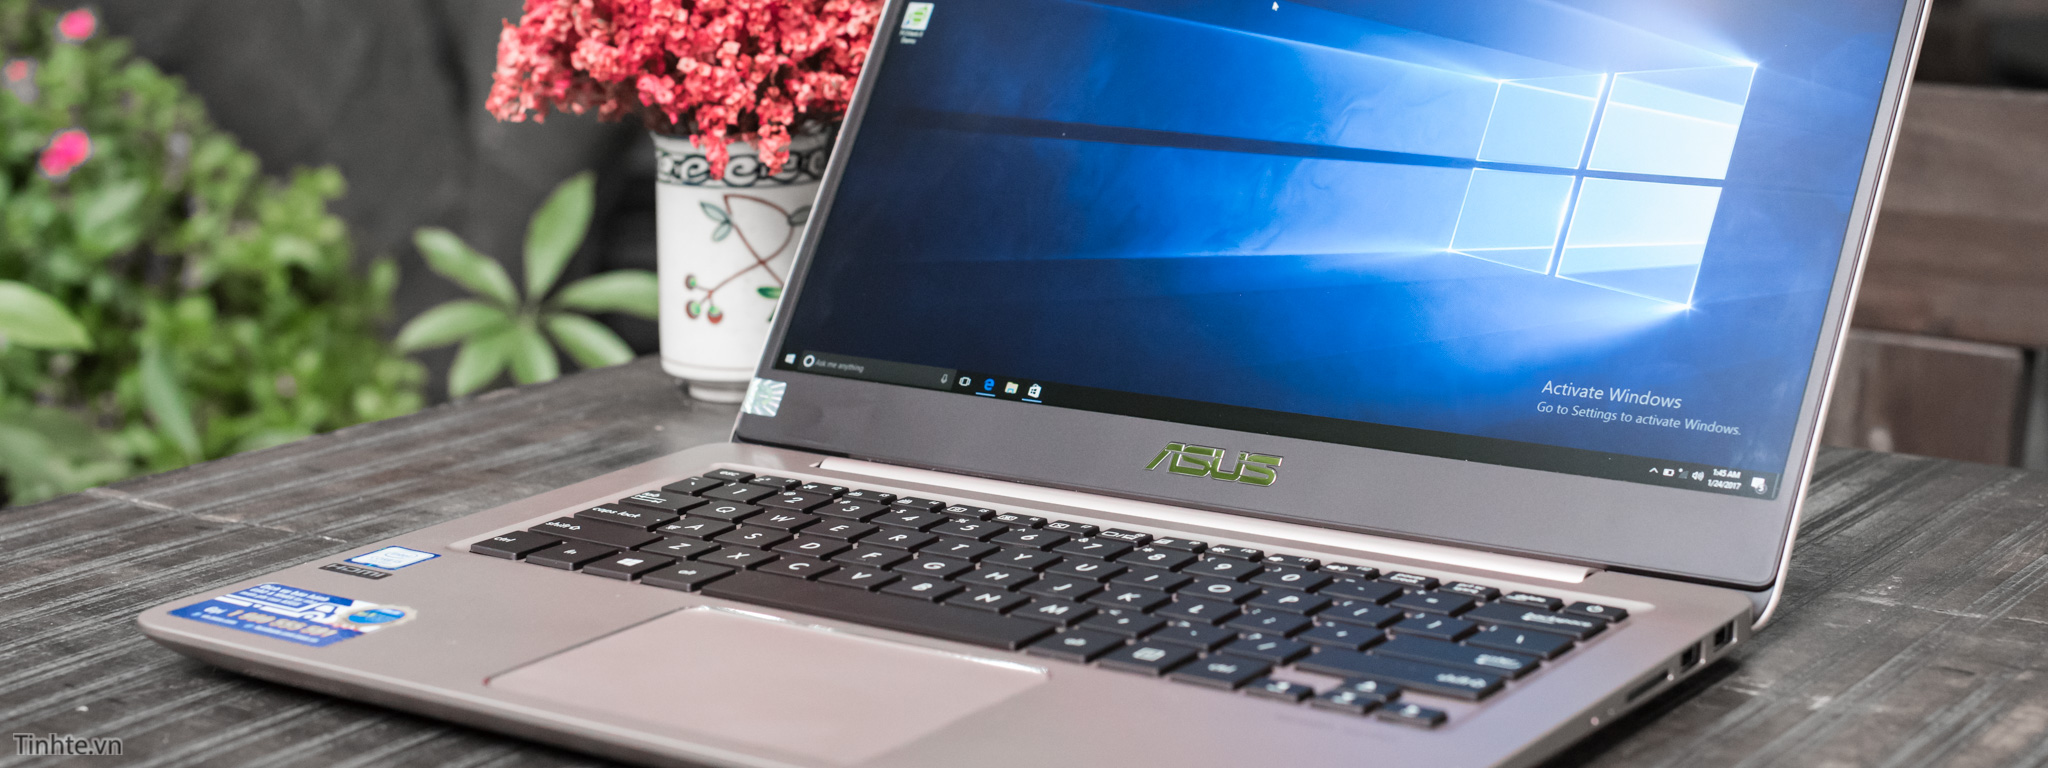 Đánh giá ASUS ZenBook UX410UA: 14" viền mỏng, thiết kế tốt, cấu hình vừa với giá 16 triệu